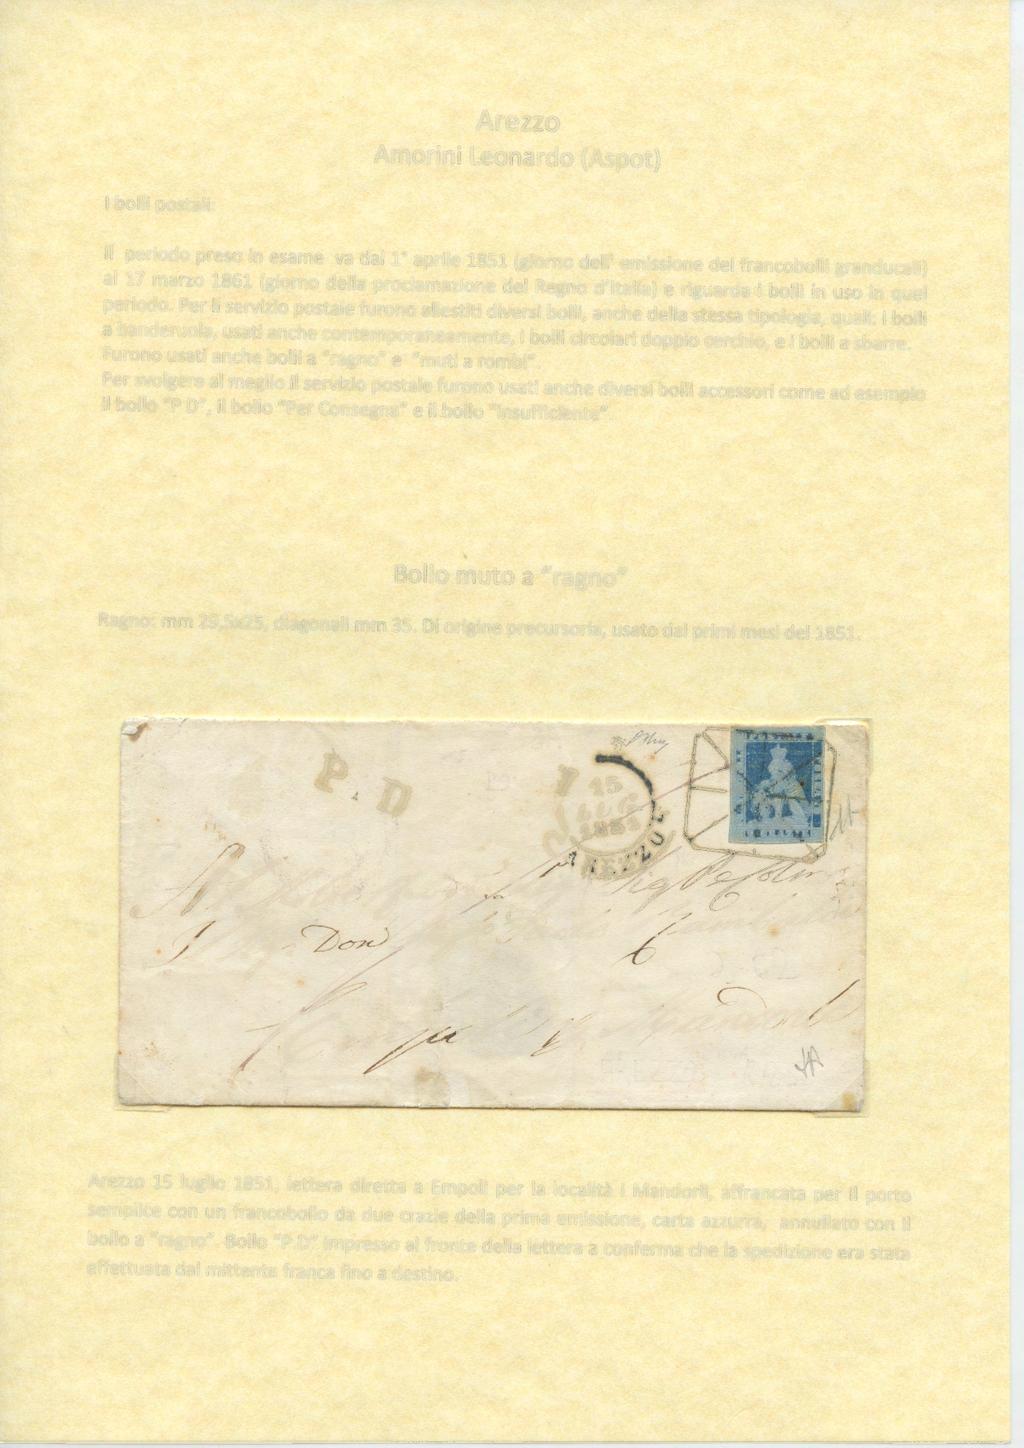 Arezzo Amorini Leonardo (Aspot) I bolli postali: Il periodo preso in esame va dal 1 aprile 1851 (giorno dell' emissione dei francobolli granducali) al 17 marzo 1861 (giorno della